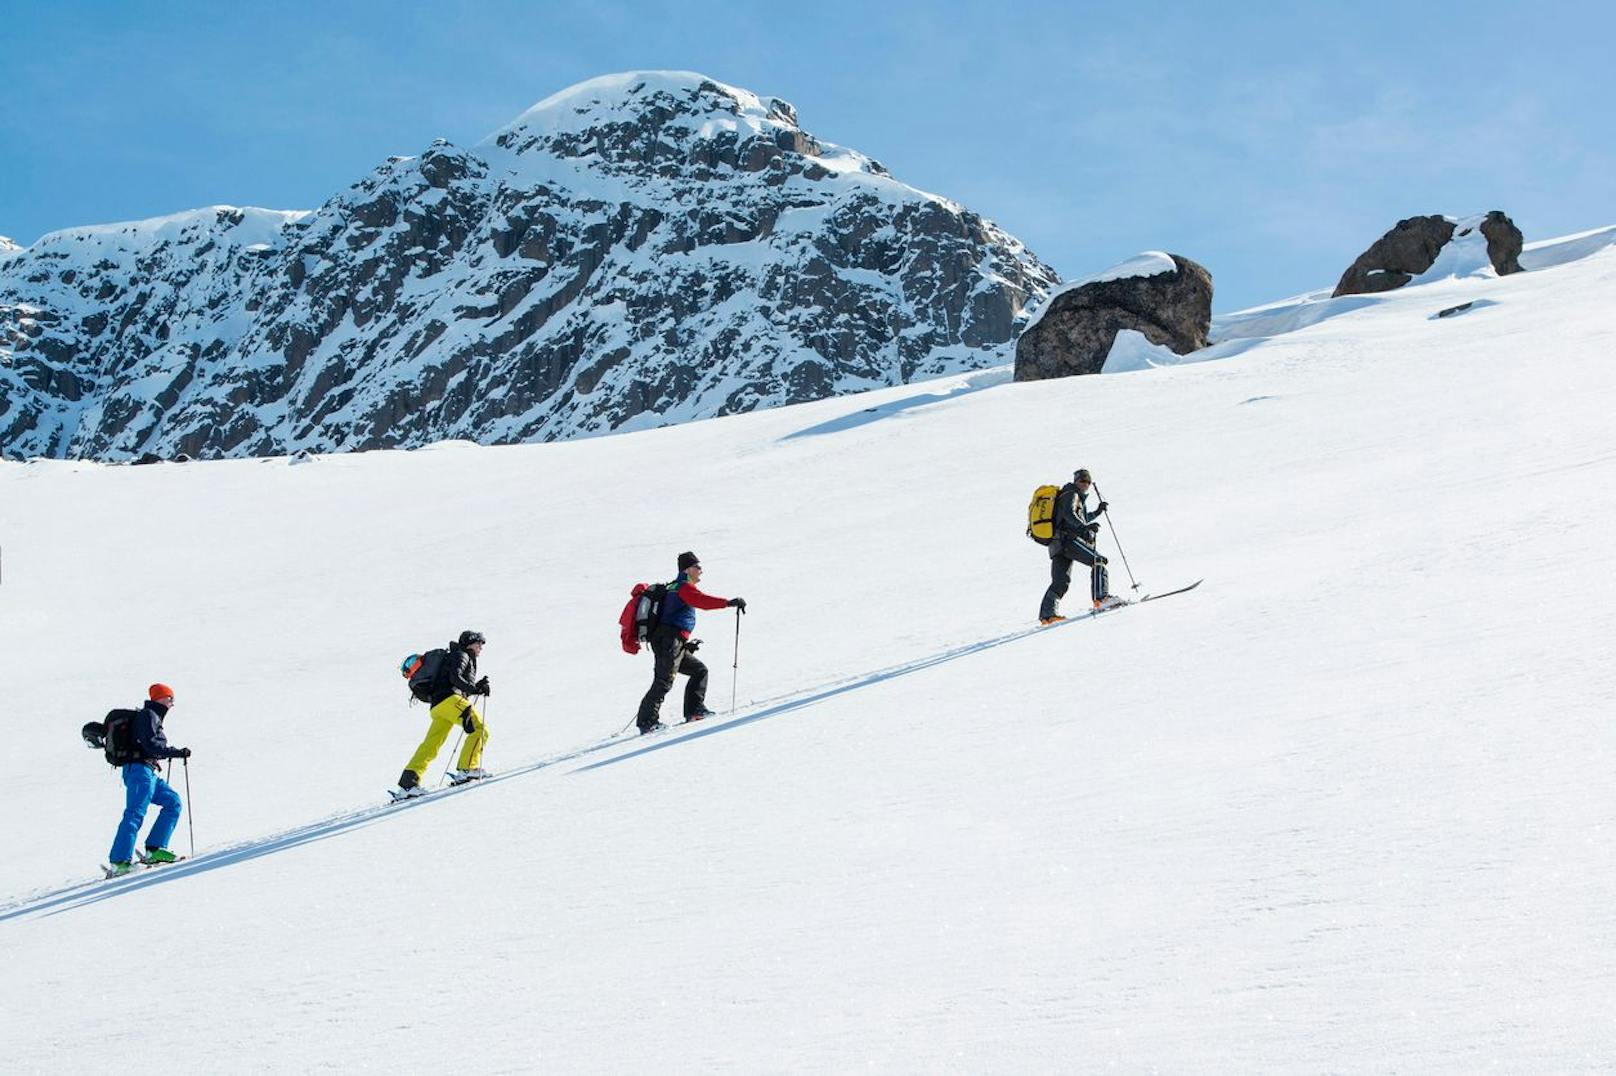 Platz fünf wird Grönland gebührt, wenn es um winterliche Aktivitäten geht. Die Skisaison hält im schneebedeckten Land auch bis zum Mai an.